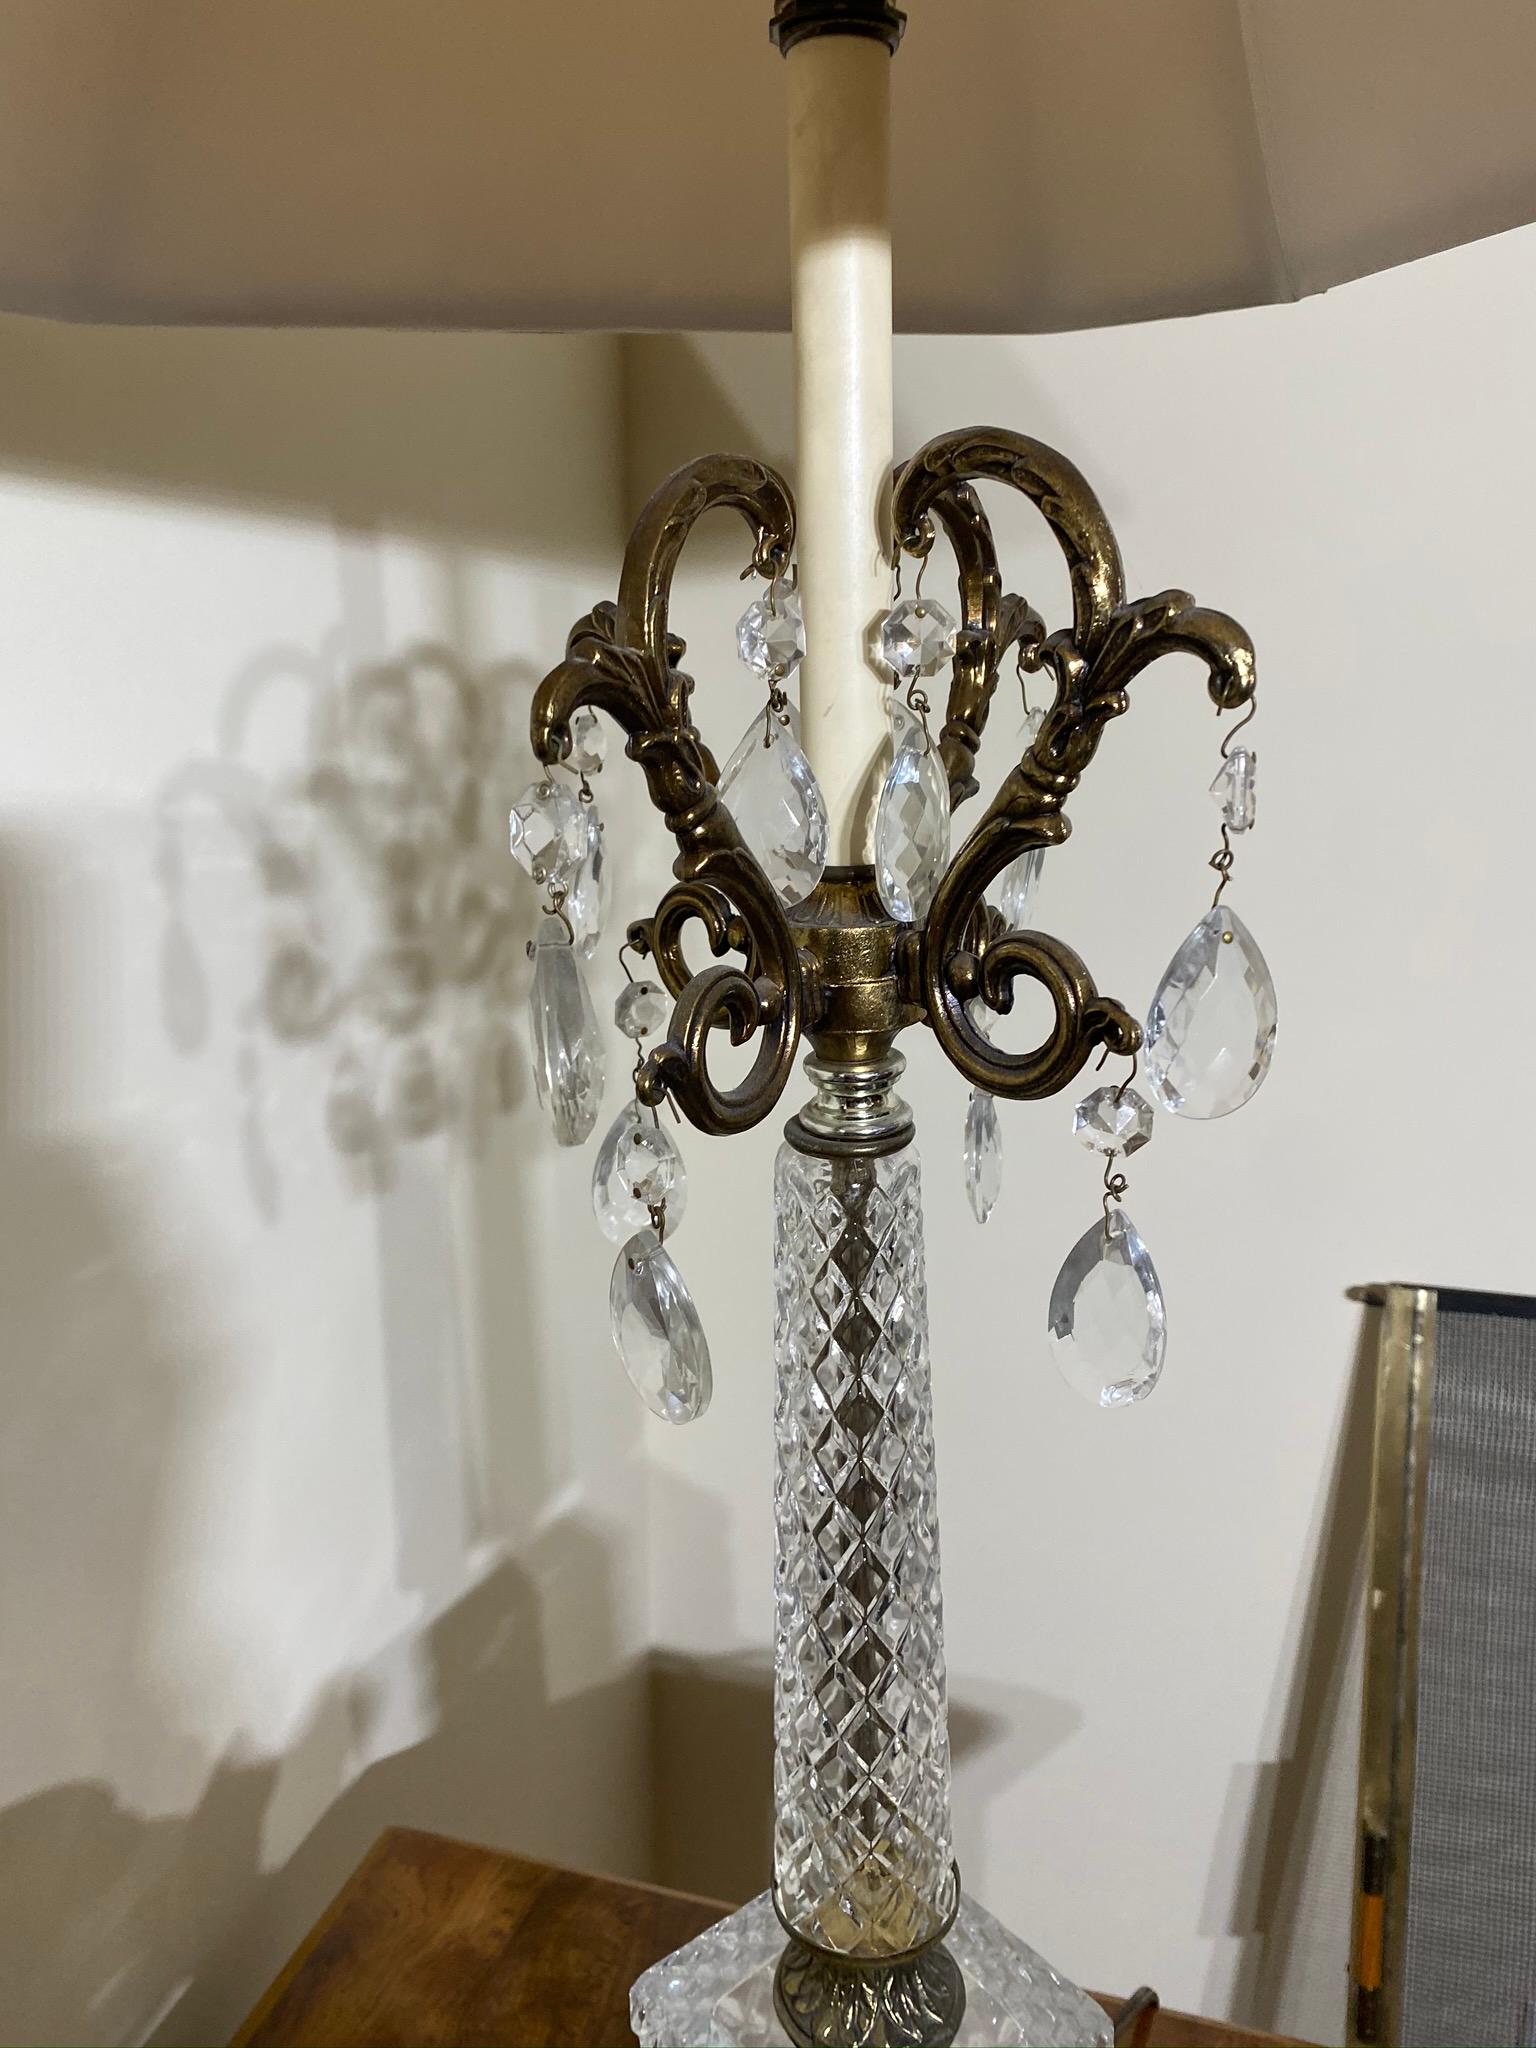 Fancy vintage chandelier lamp, 2 Asian vase bases